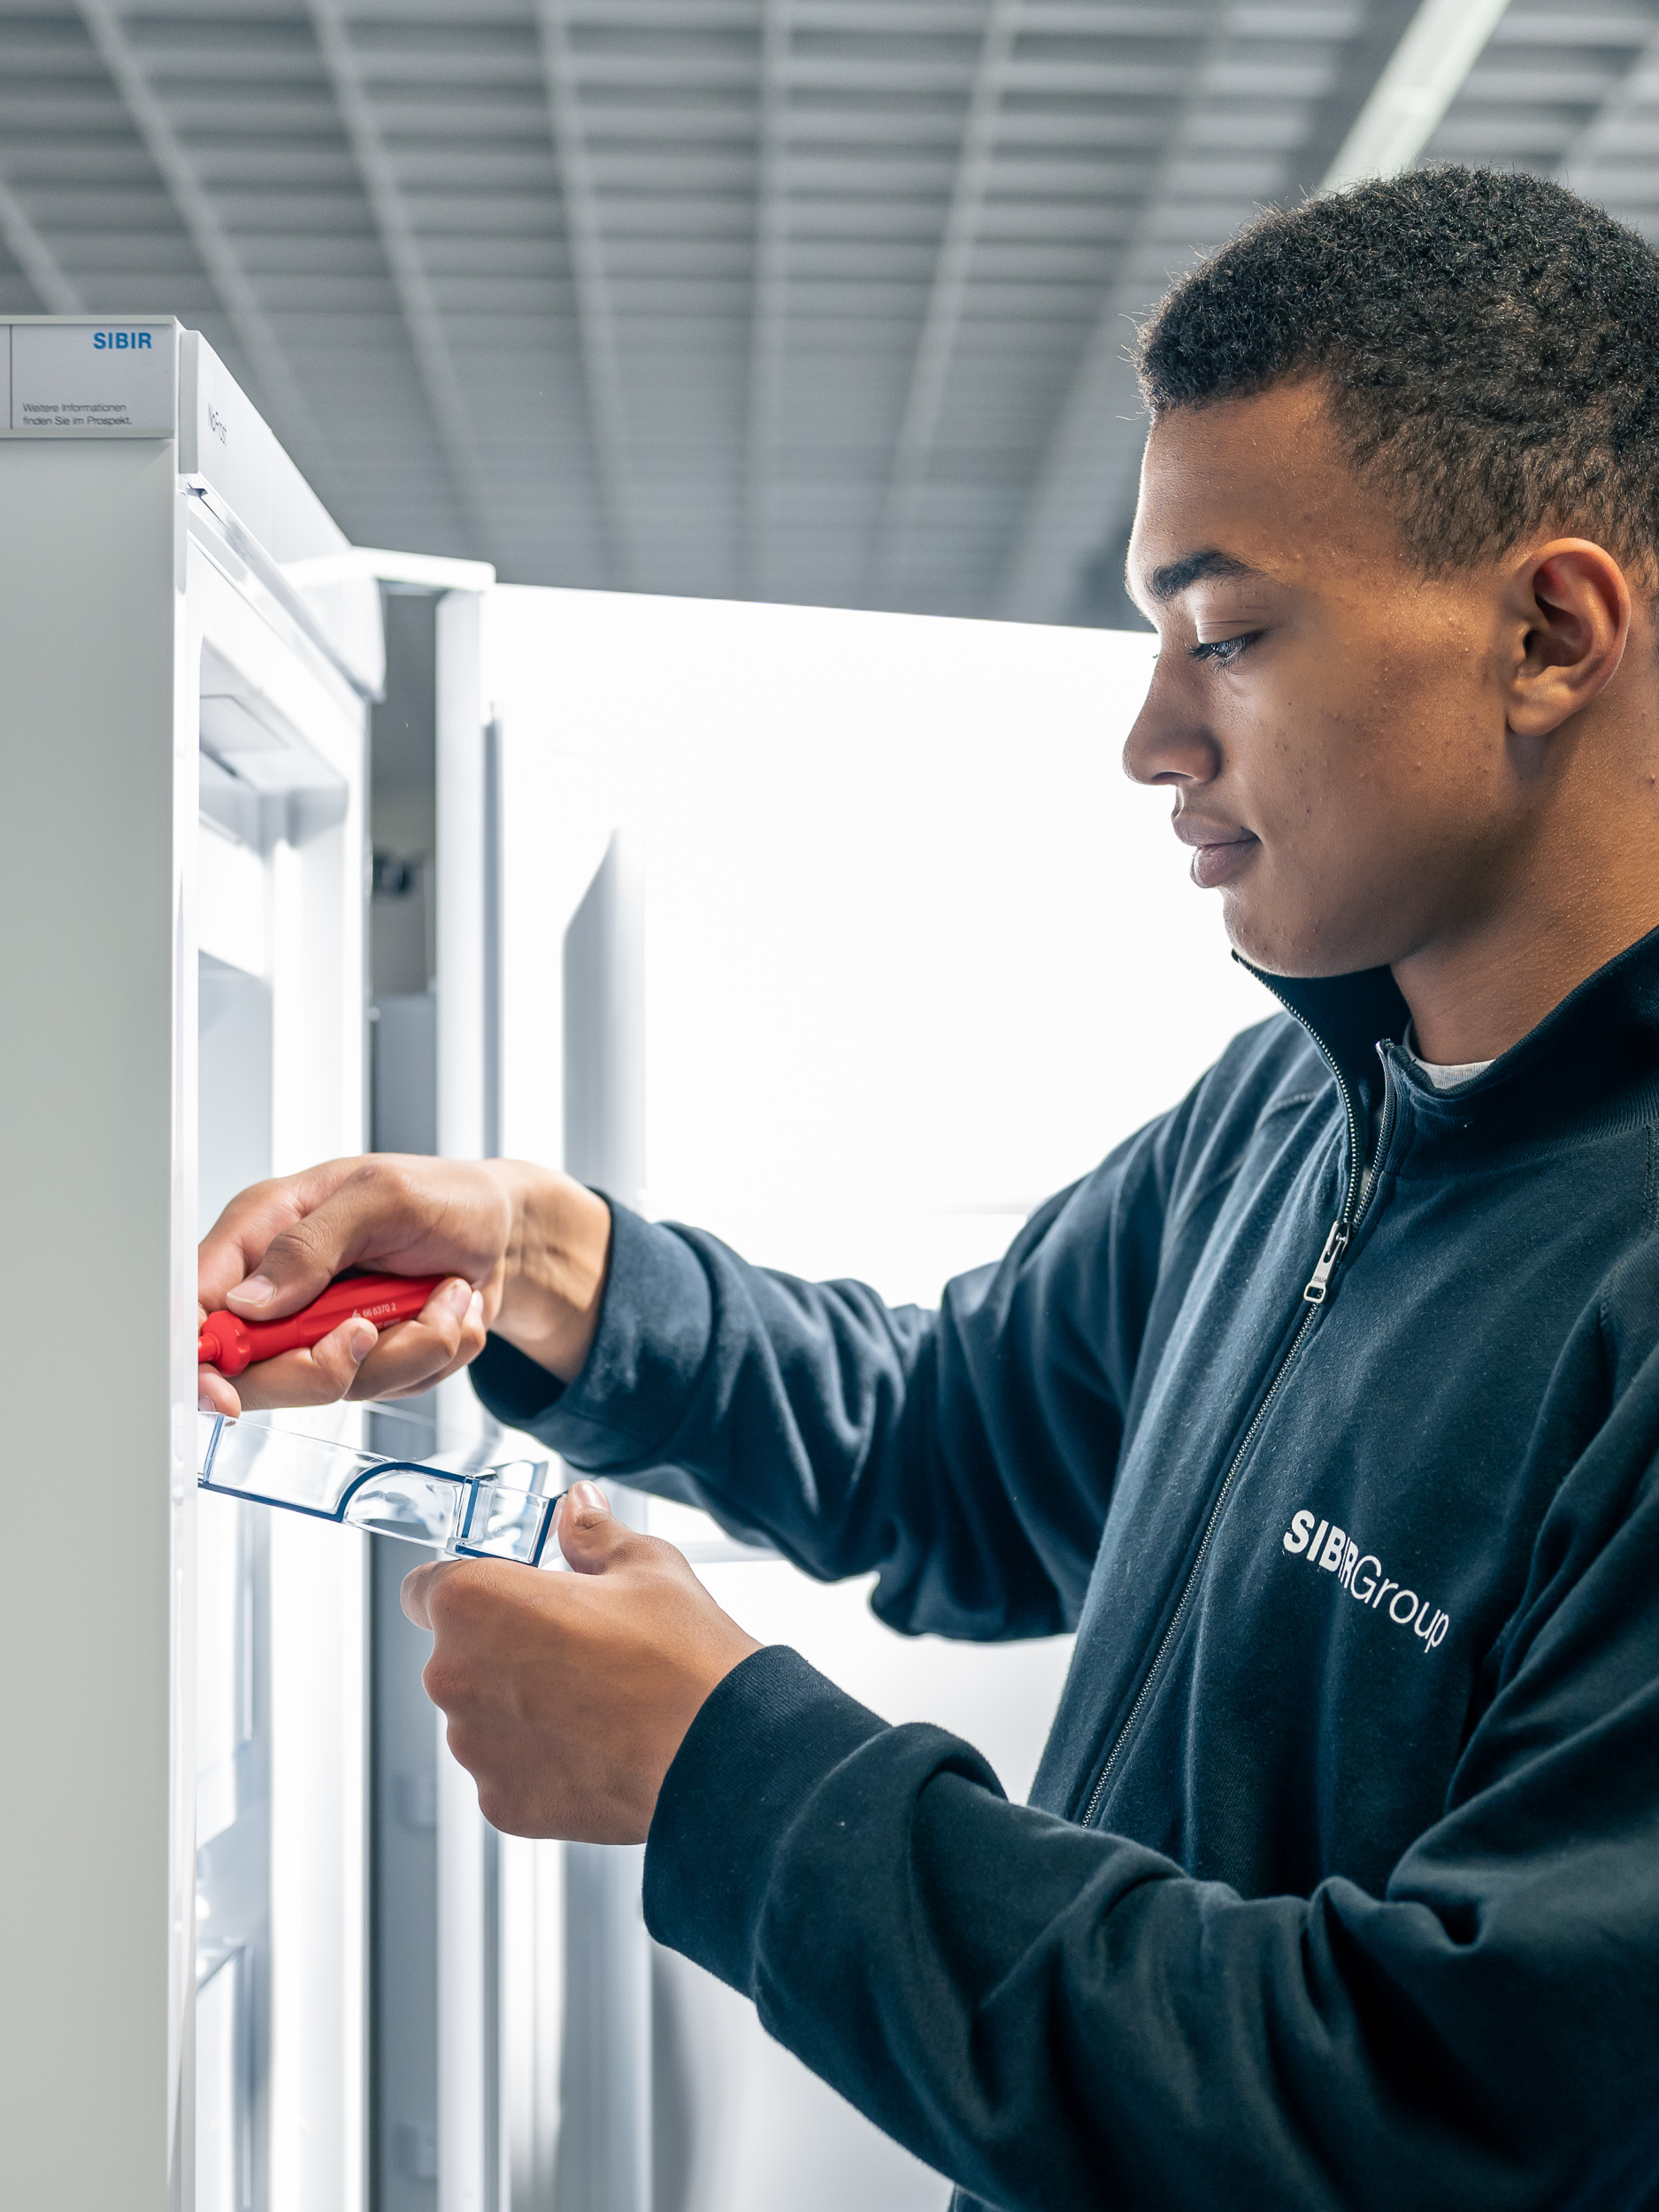 SIBIR technicien de service répare le compartiment du réfrigérateur